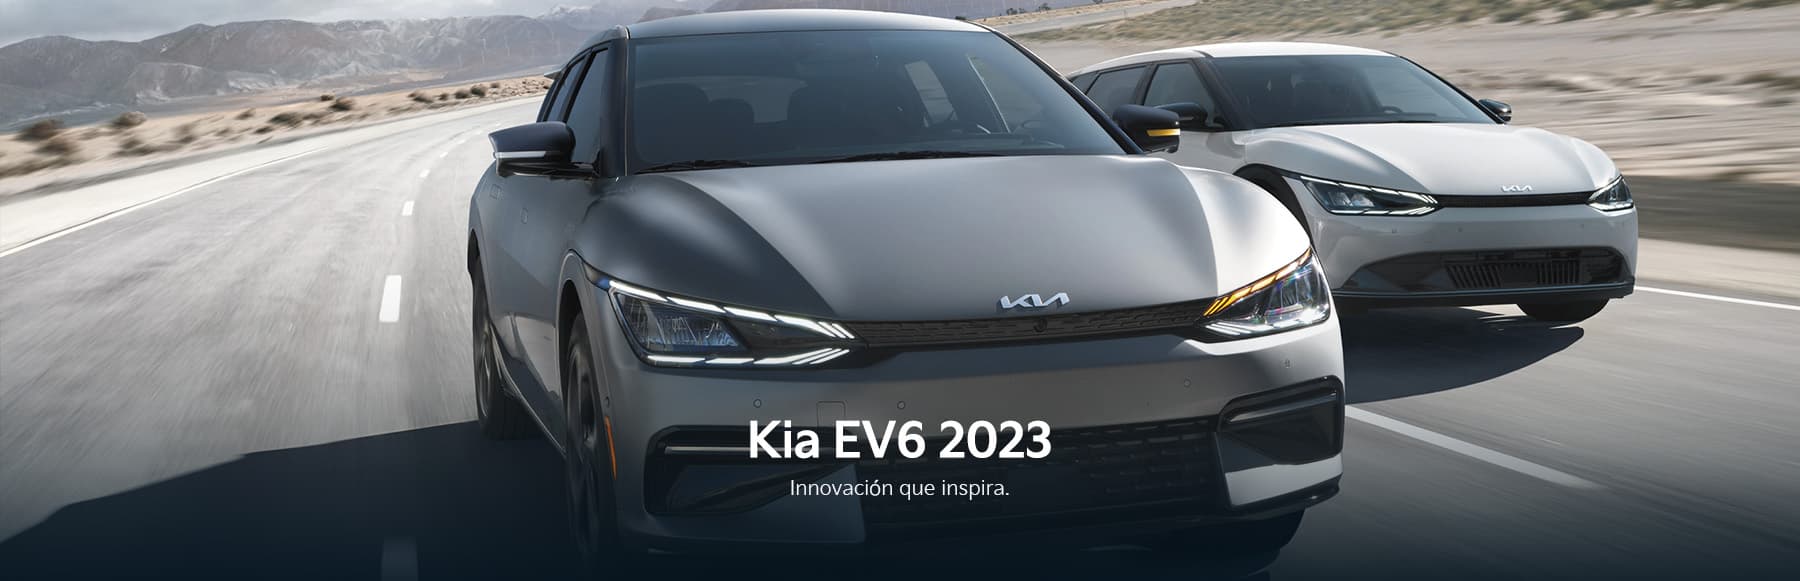 Kia EV6 2023  Innovación que inspira.